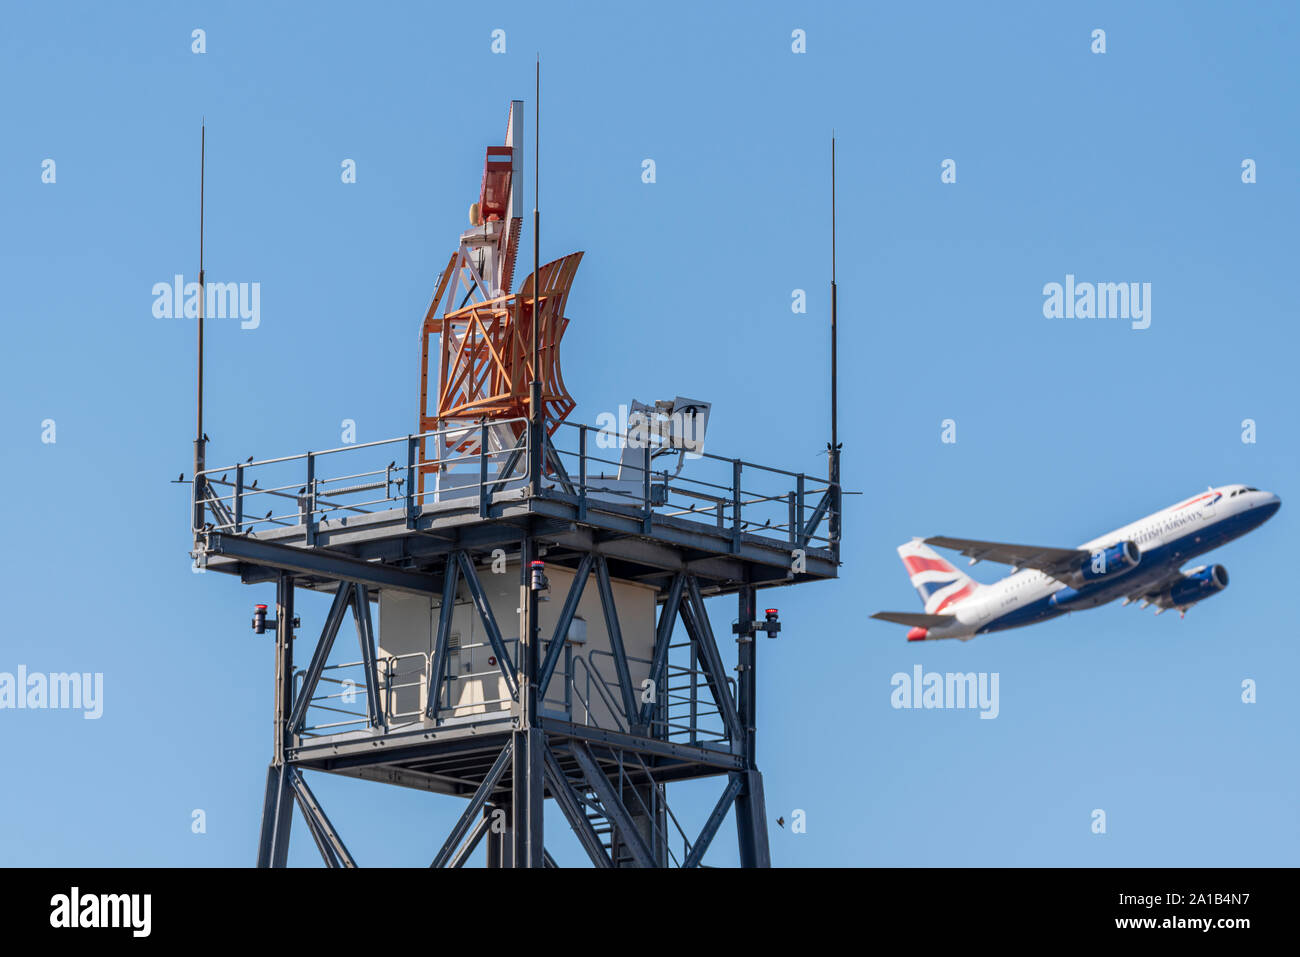 Eine Radarantenne am Flughafen London Heathrow in Betrieb. Kontrollierter Luftraum. British Airways Flugzeug startet. Vögel auf Struktur Stockfoto